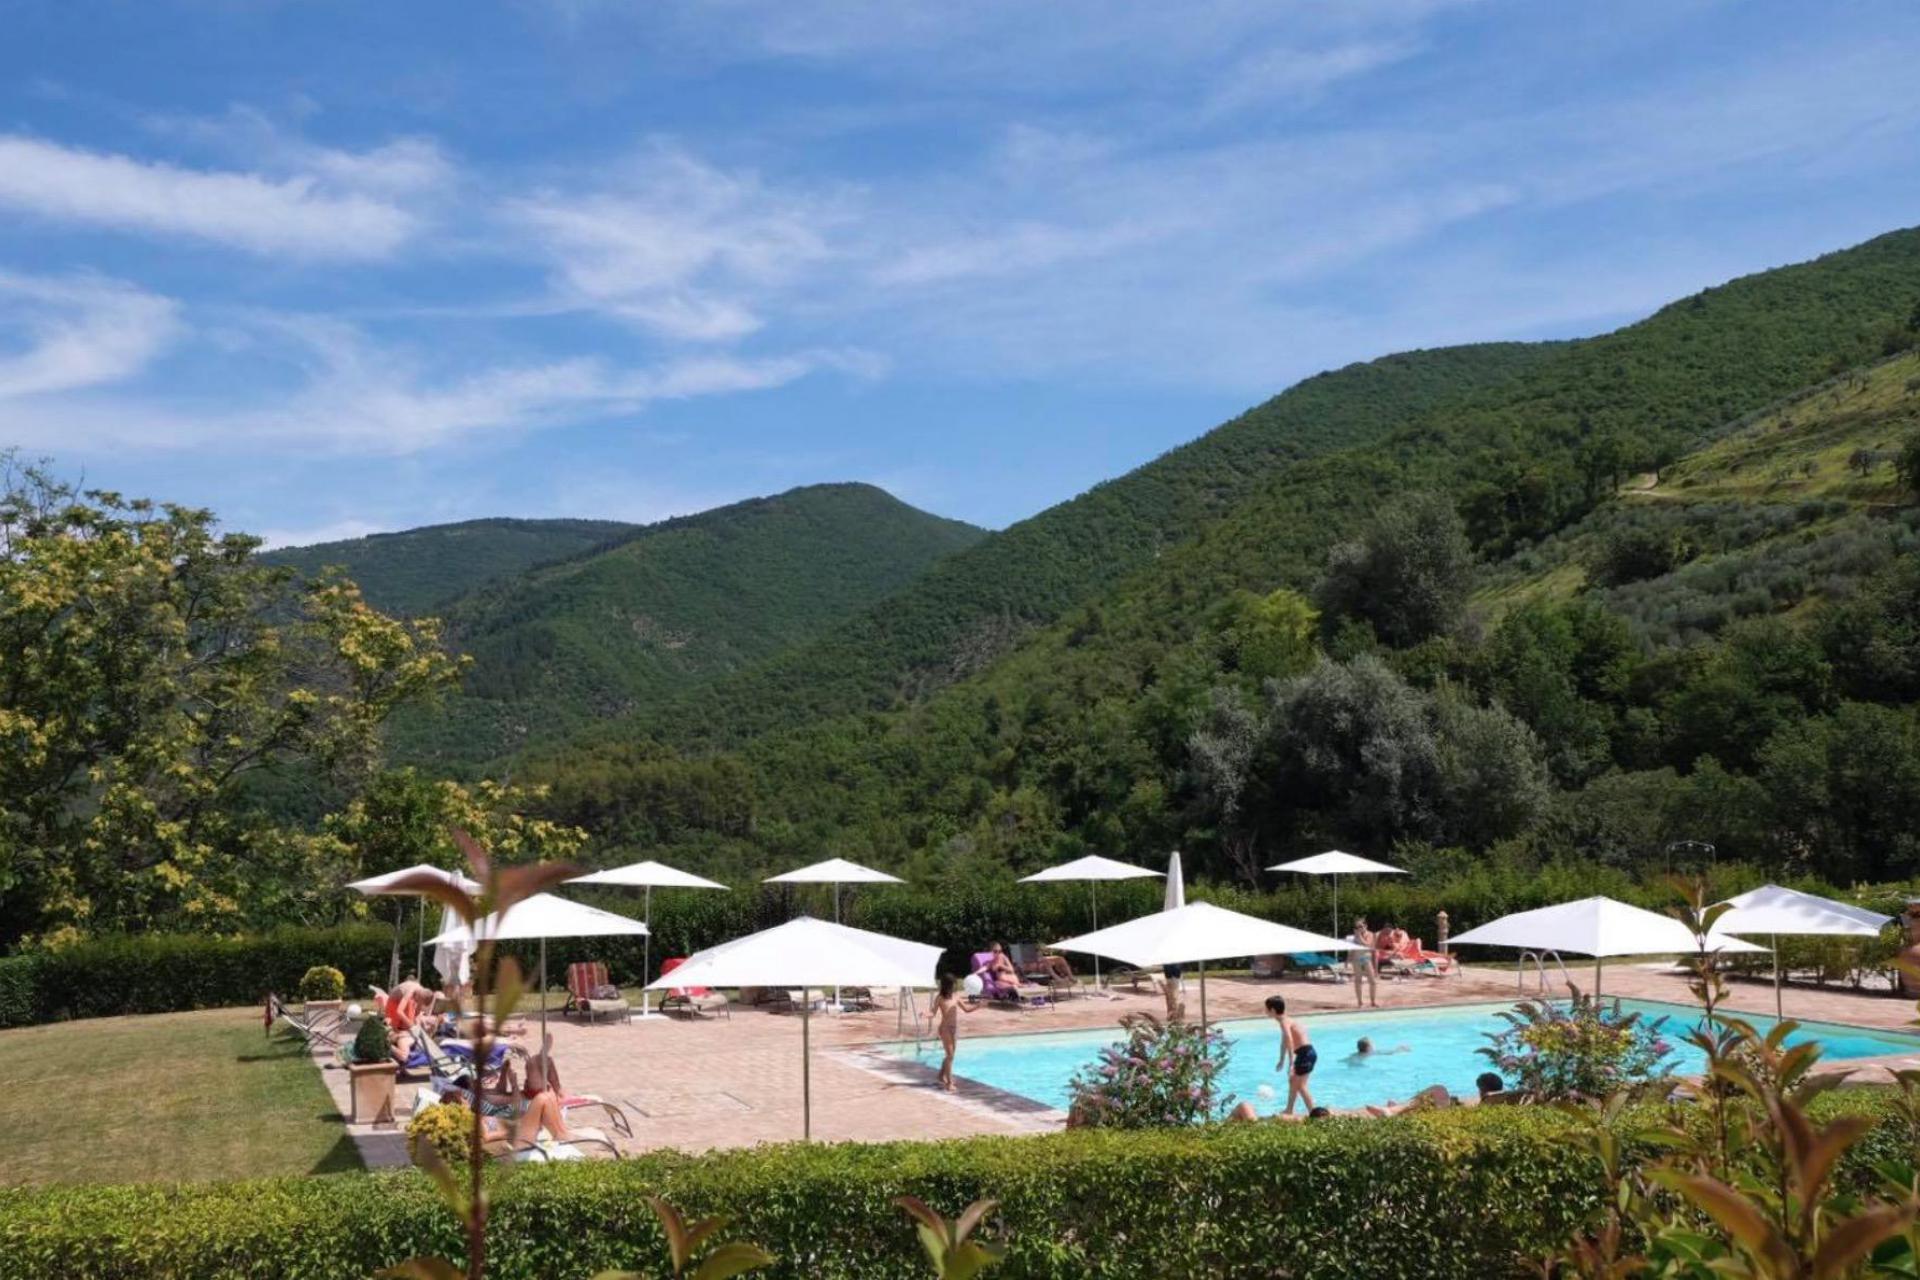 Agriturismo Umbria Resort per famiglie nel cuore dell'Umbria